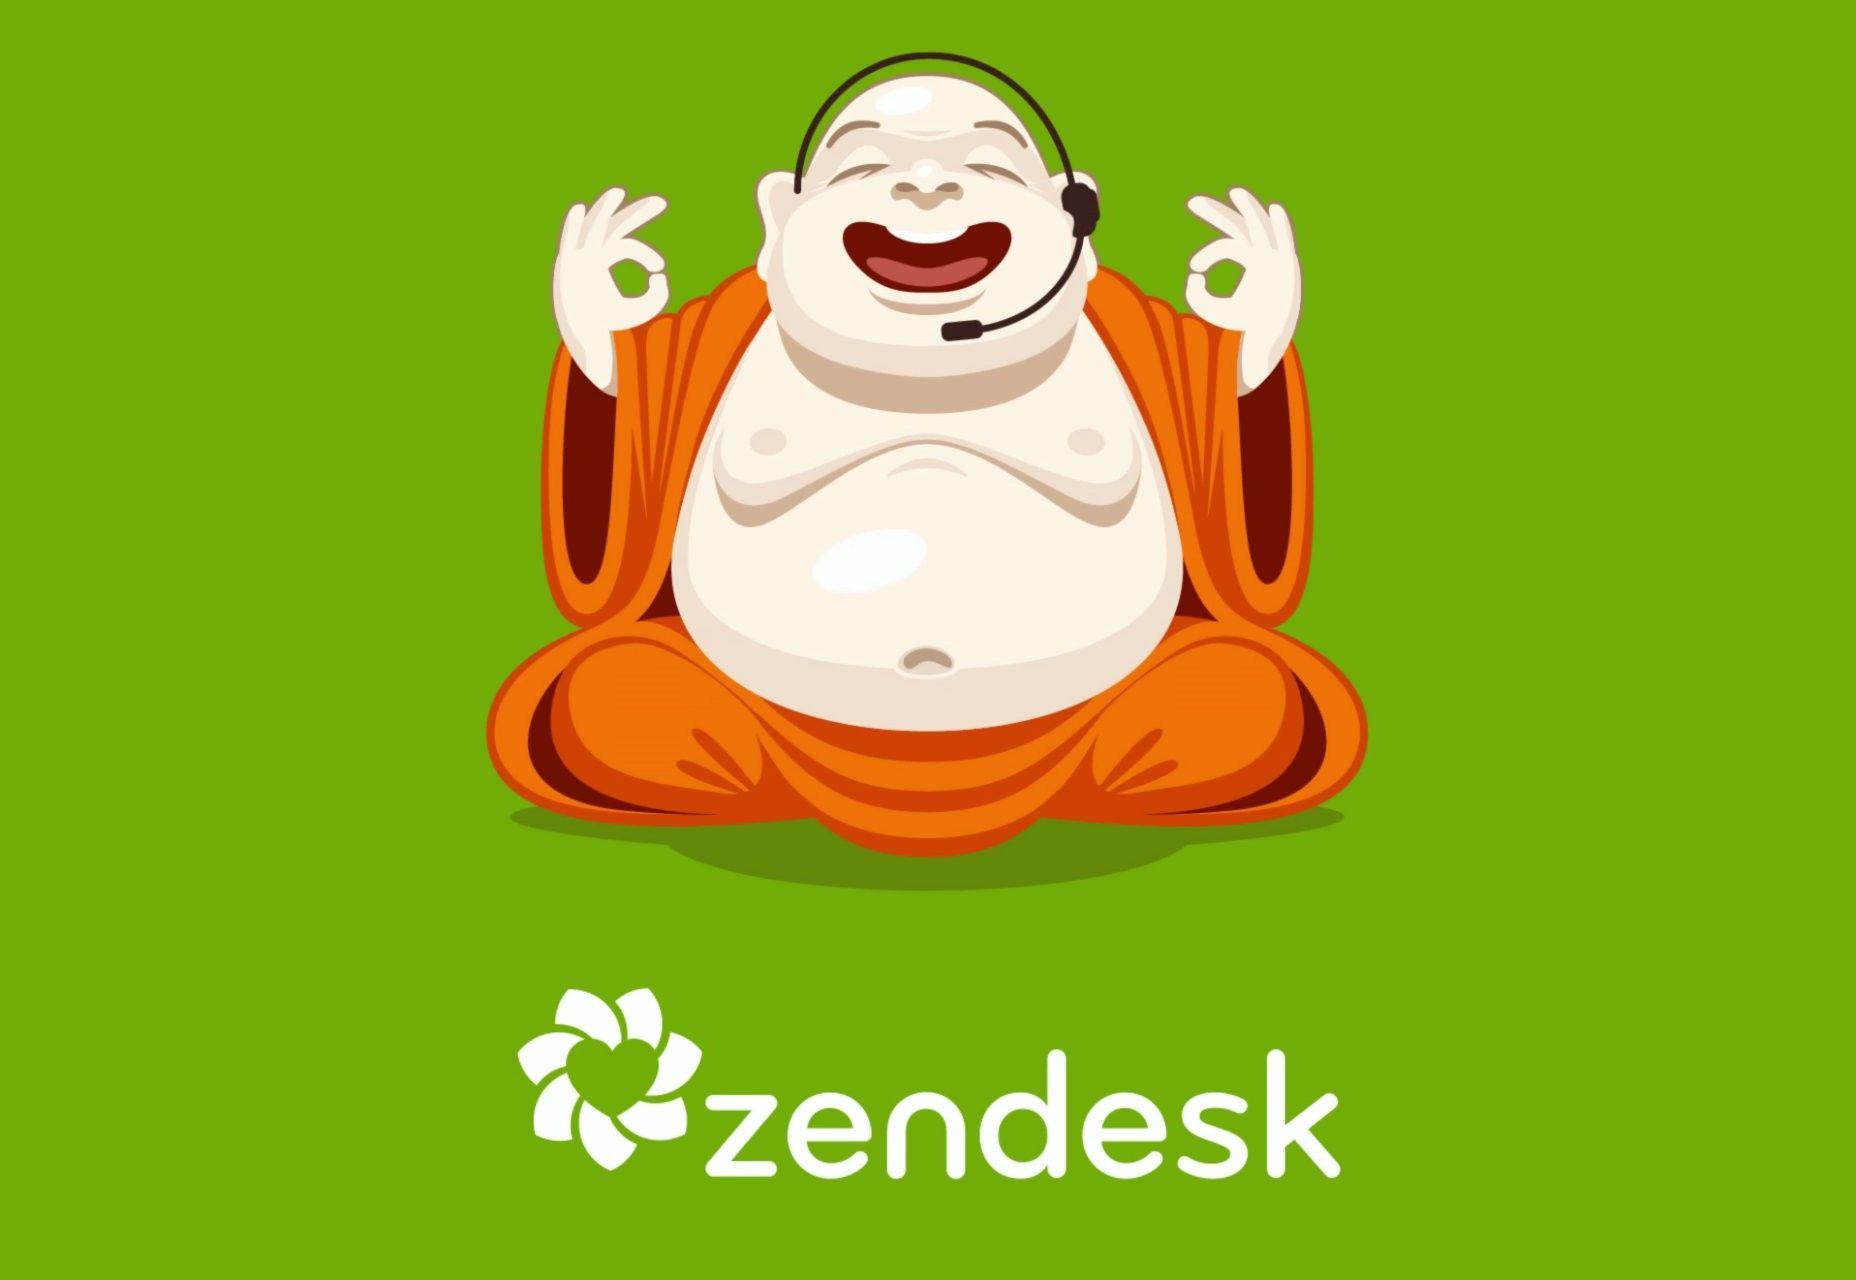 Zendesk Logo - Zendesk releases a new logo